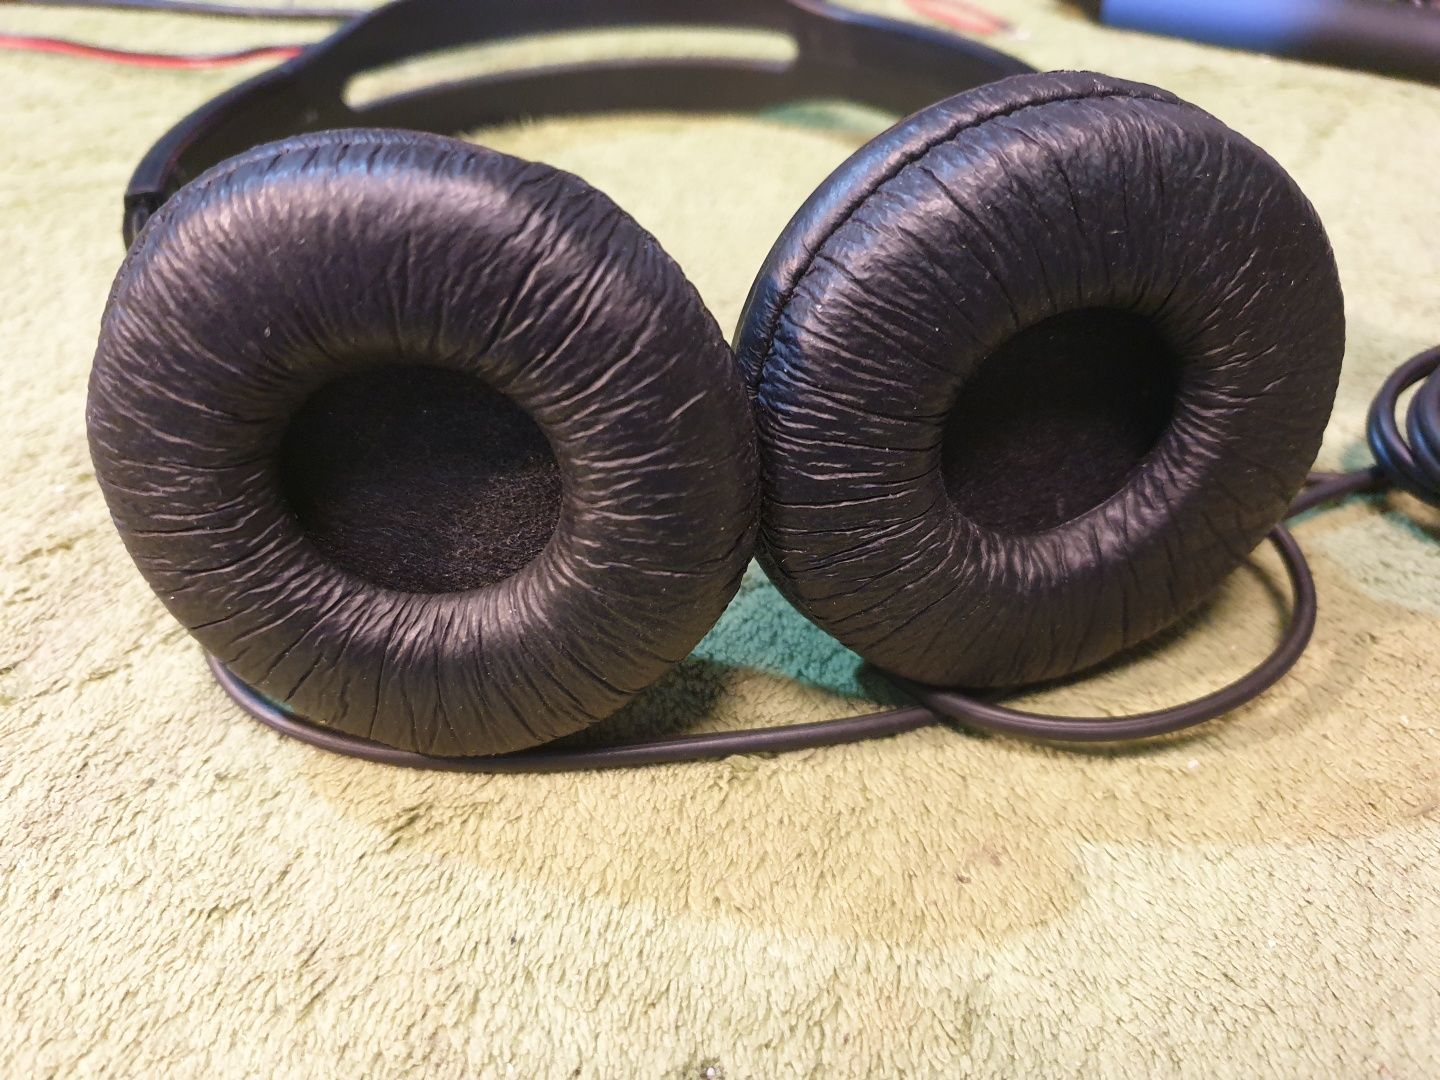 SONY MDR-V150 słuchawki nauszne przewodowe.